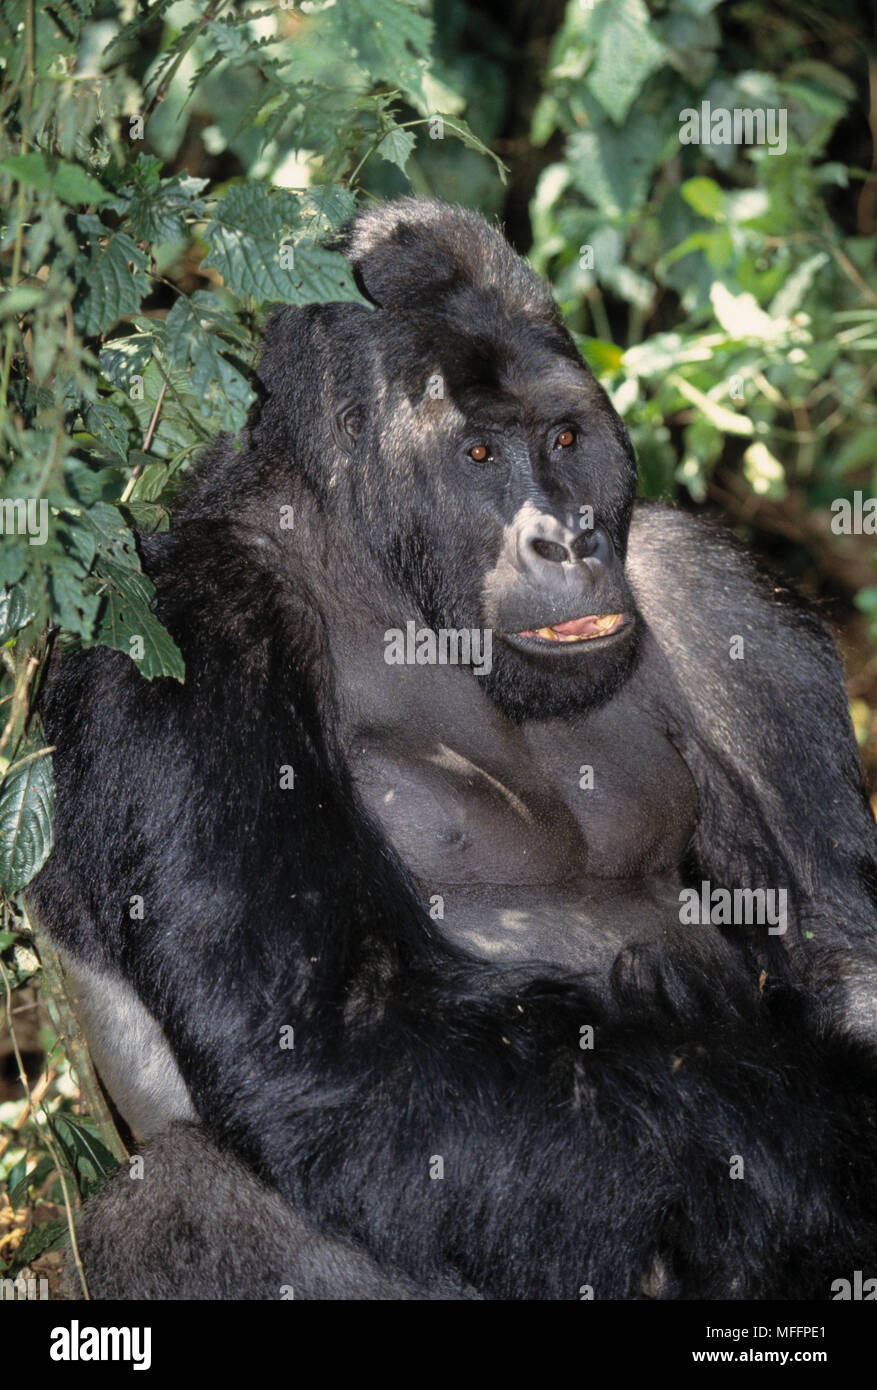 Est della pianura gorilla gorilla beringei graueri Parc National du Kahuzi-Biega, Repubblica Democratica del Congo. Foto Stock